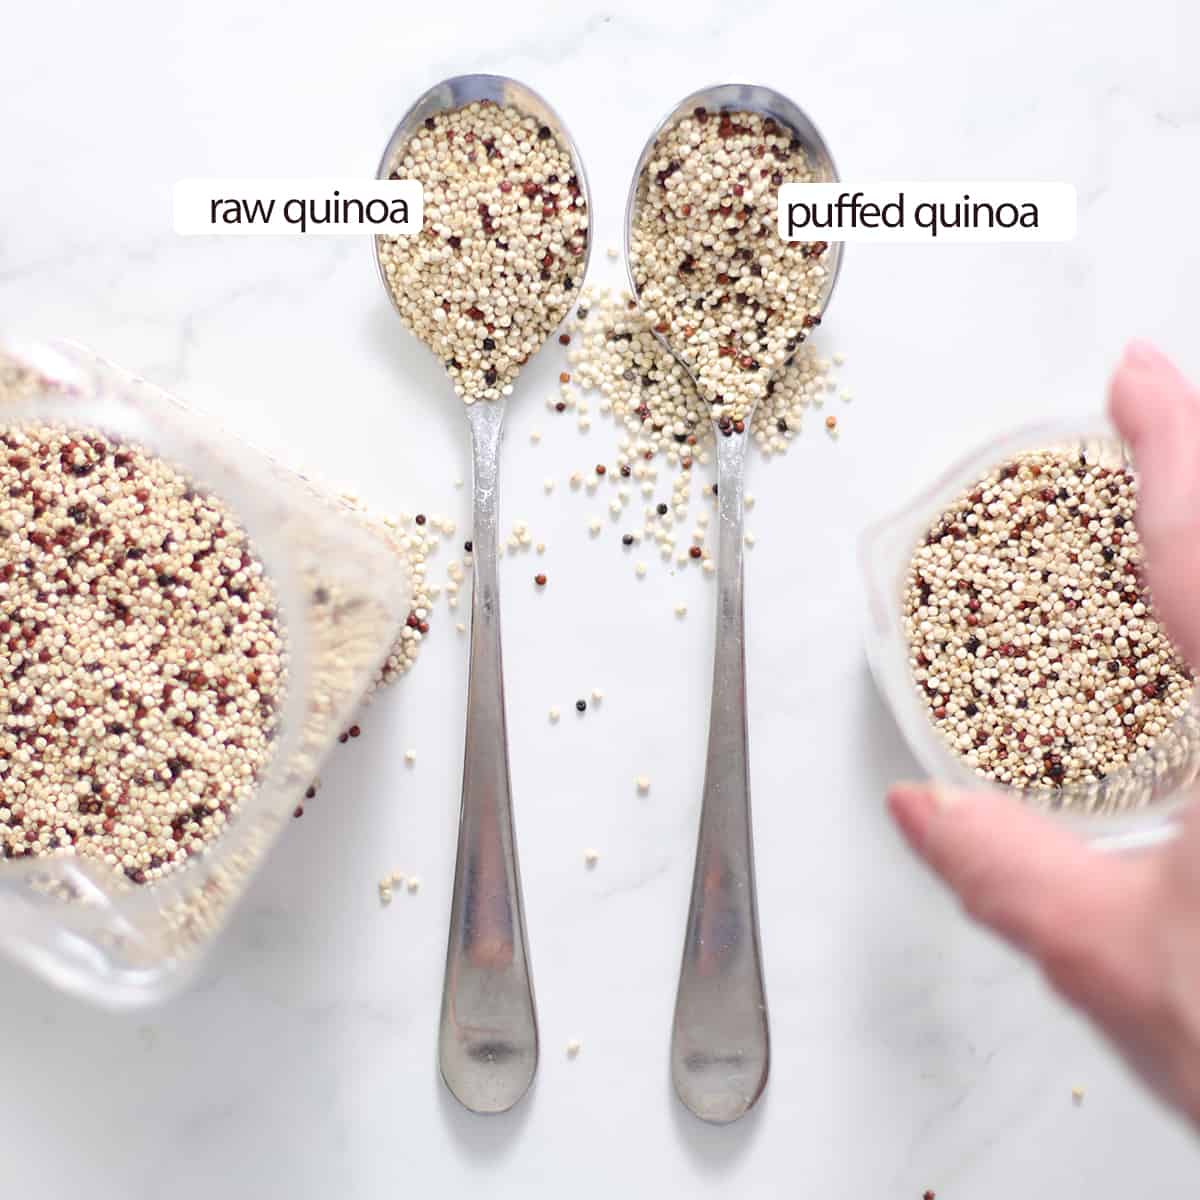 Confronto tra quinoa cruda e spuntata